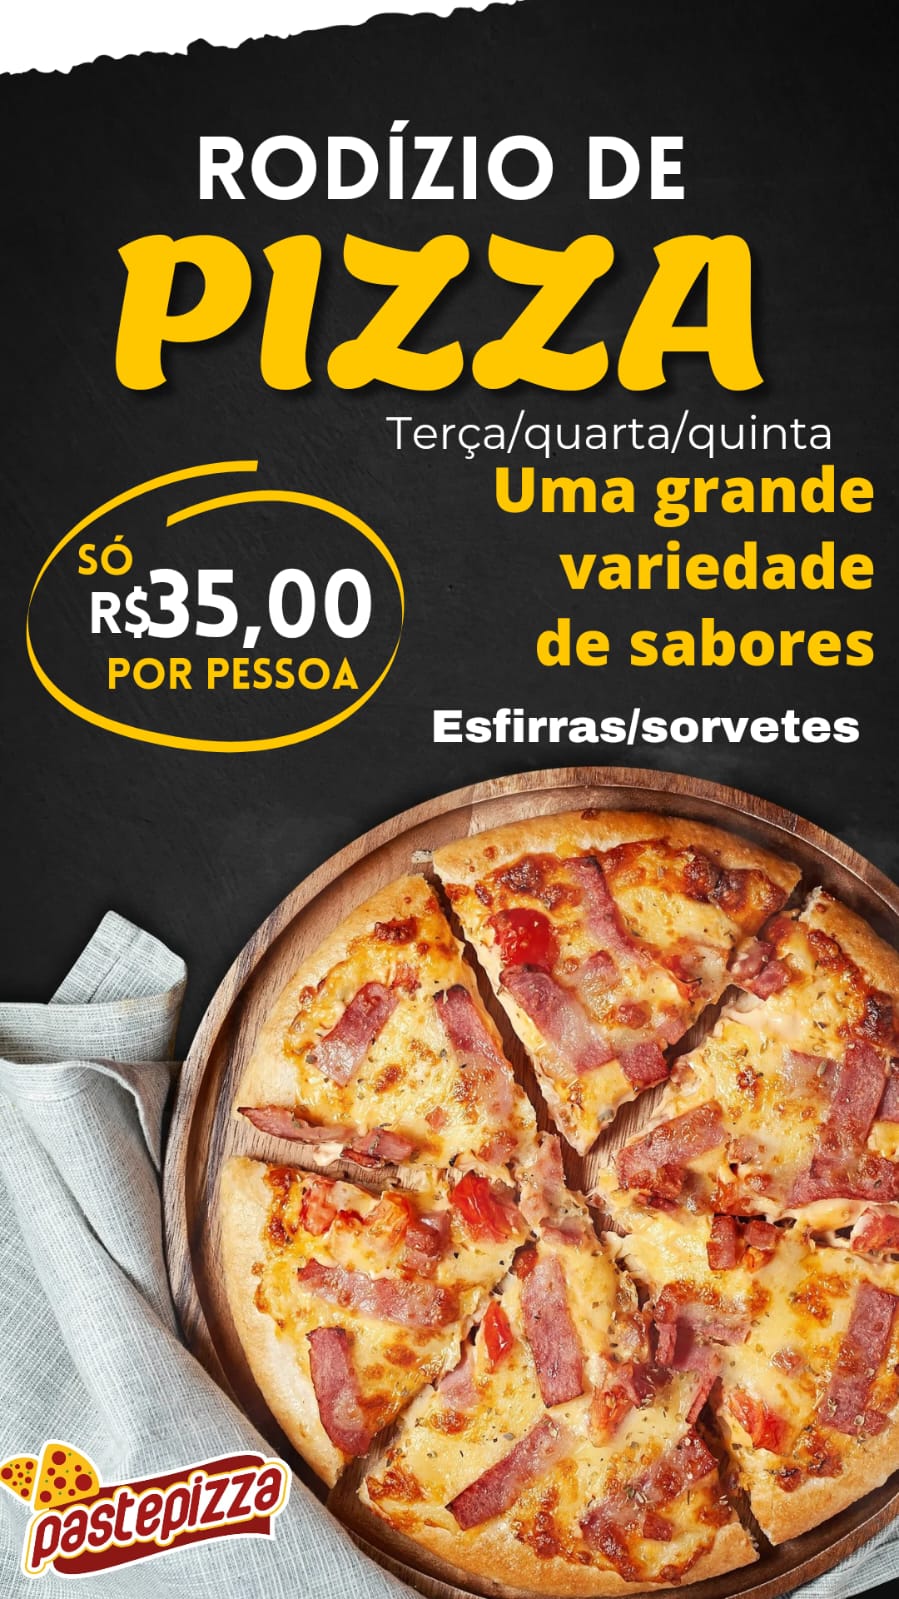 Imagem de uma oferta oferecida pela empresa Pastepizza Pizzaria e Hamburgueria